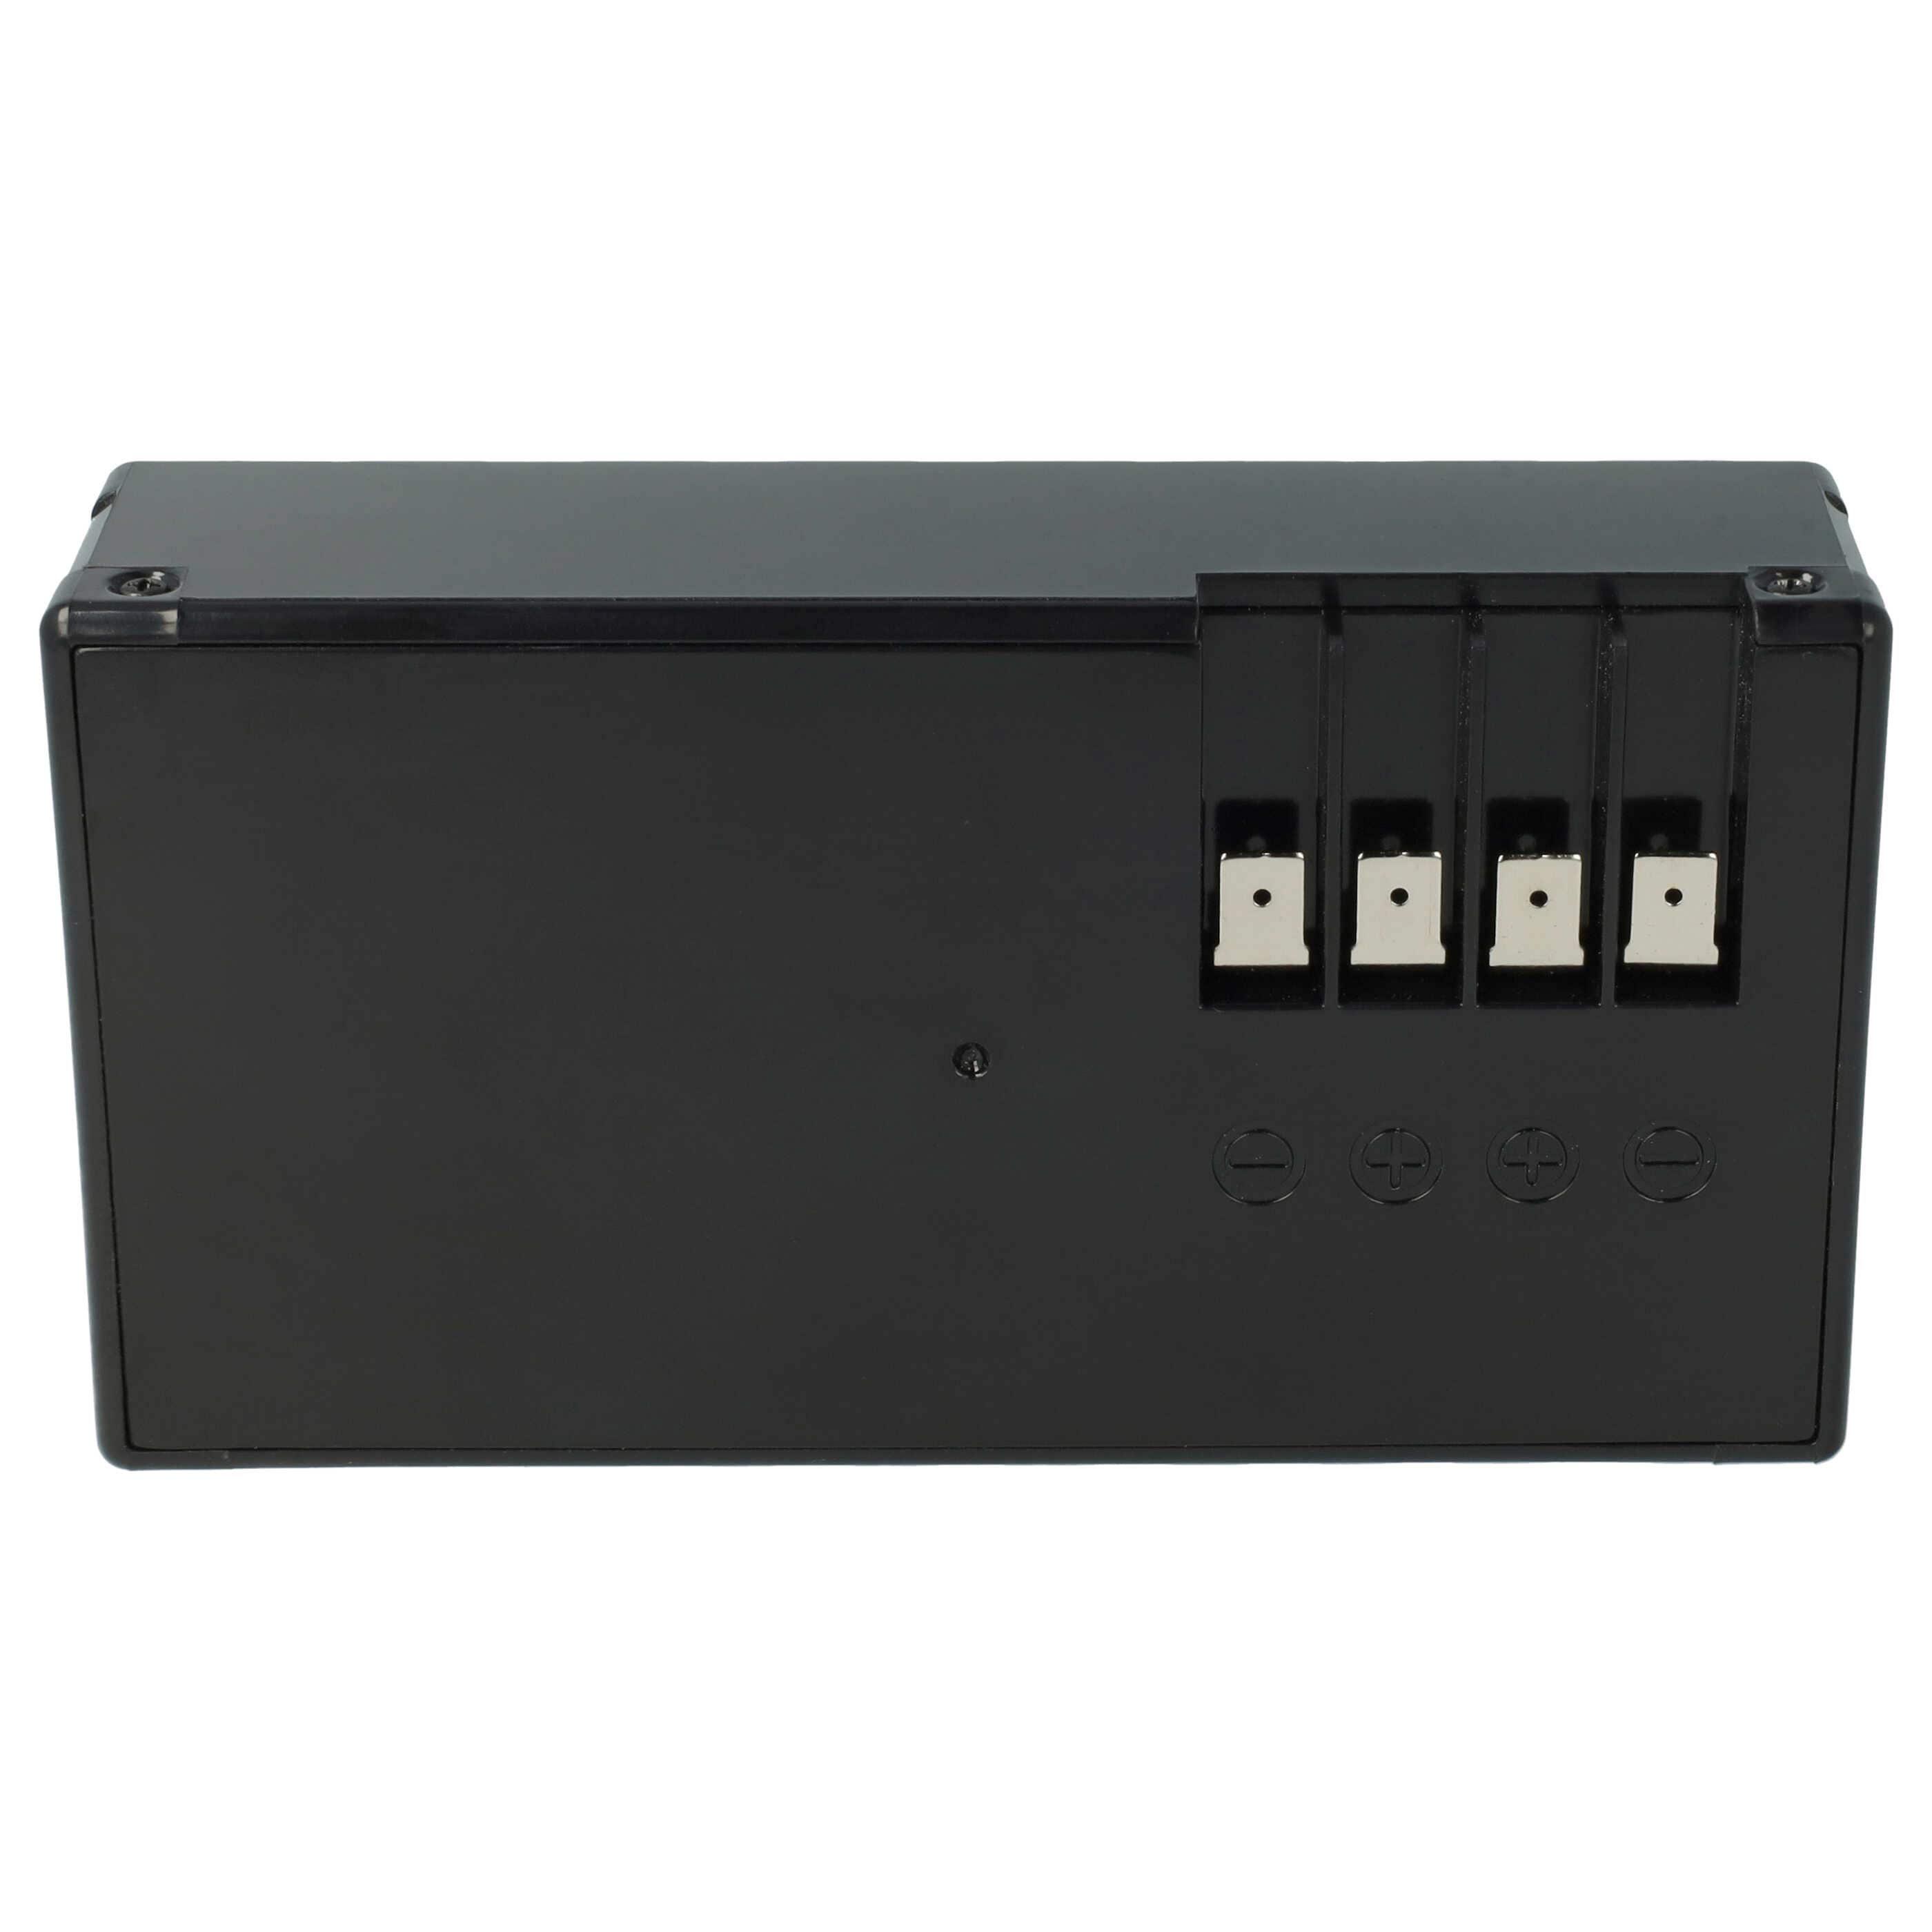 Lawnmower Replacement Battery for Ambrogio l50 / Stiga Autoclip 225s, 230s, 223 - 2300mAh 25.2V Li-Ion, black